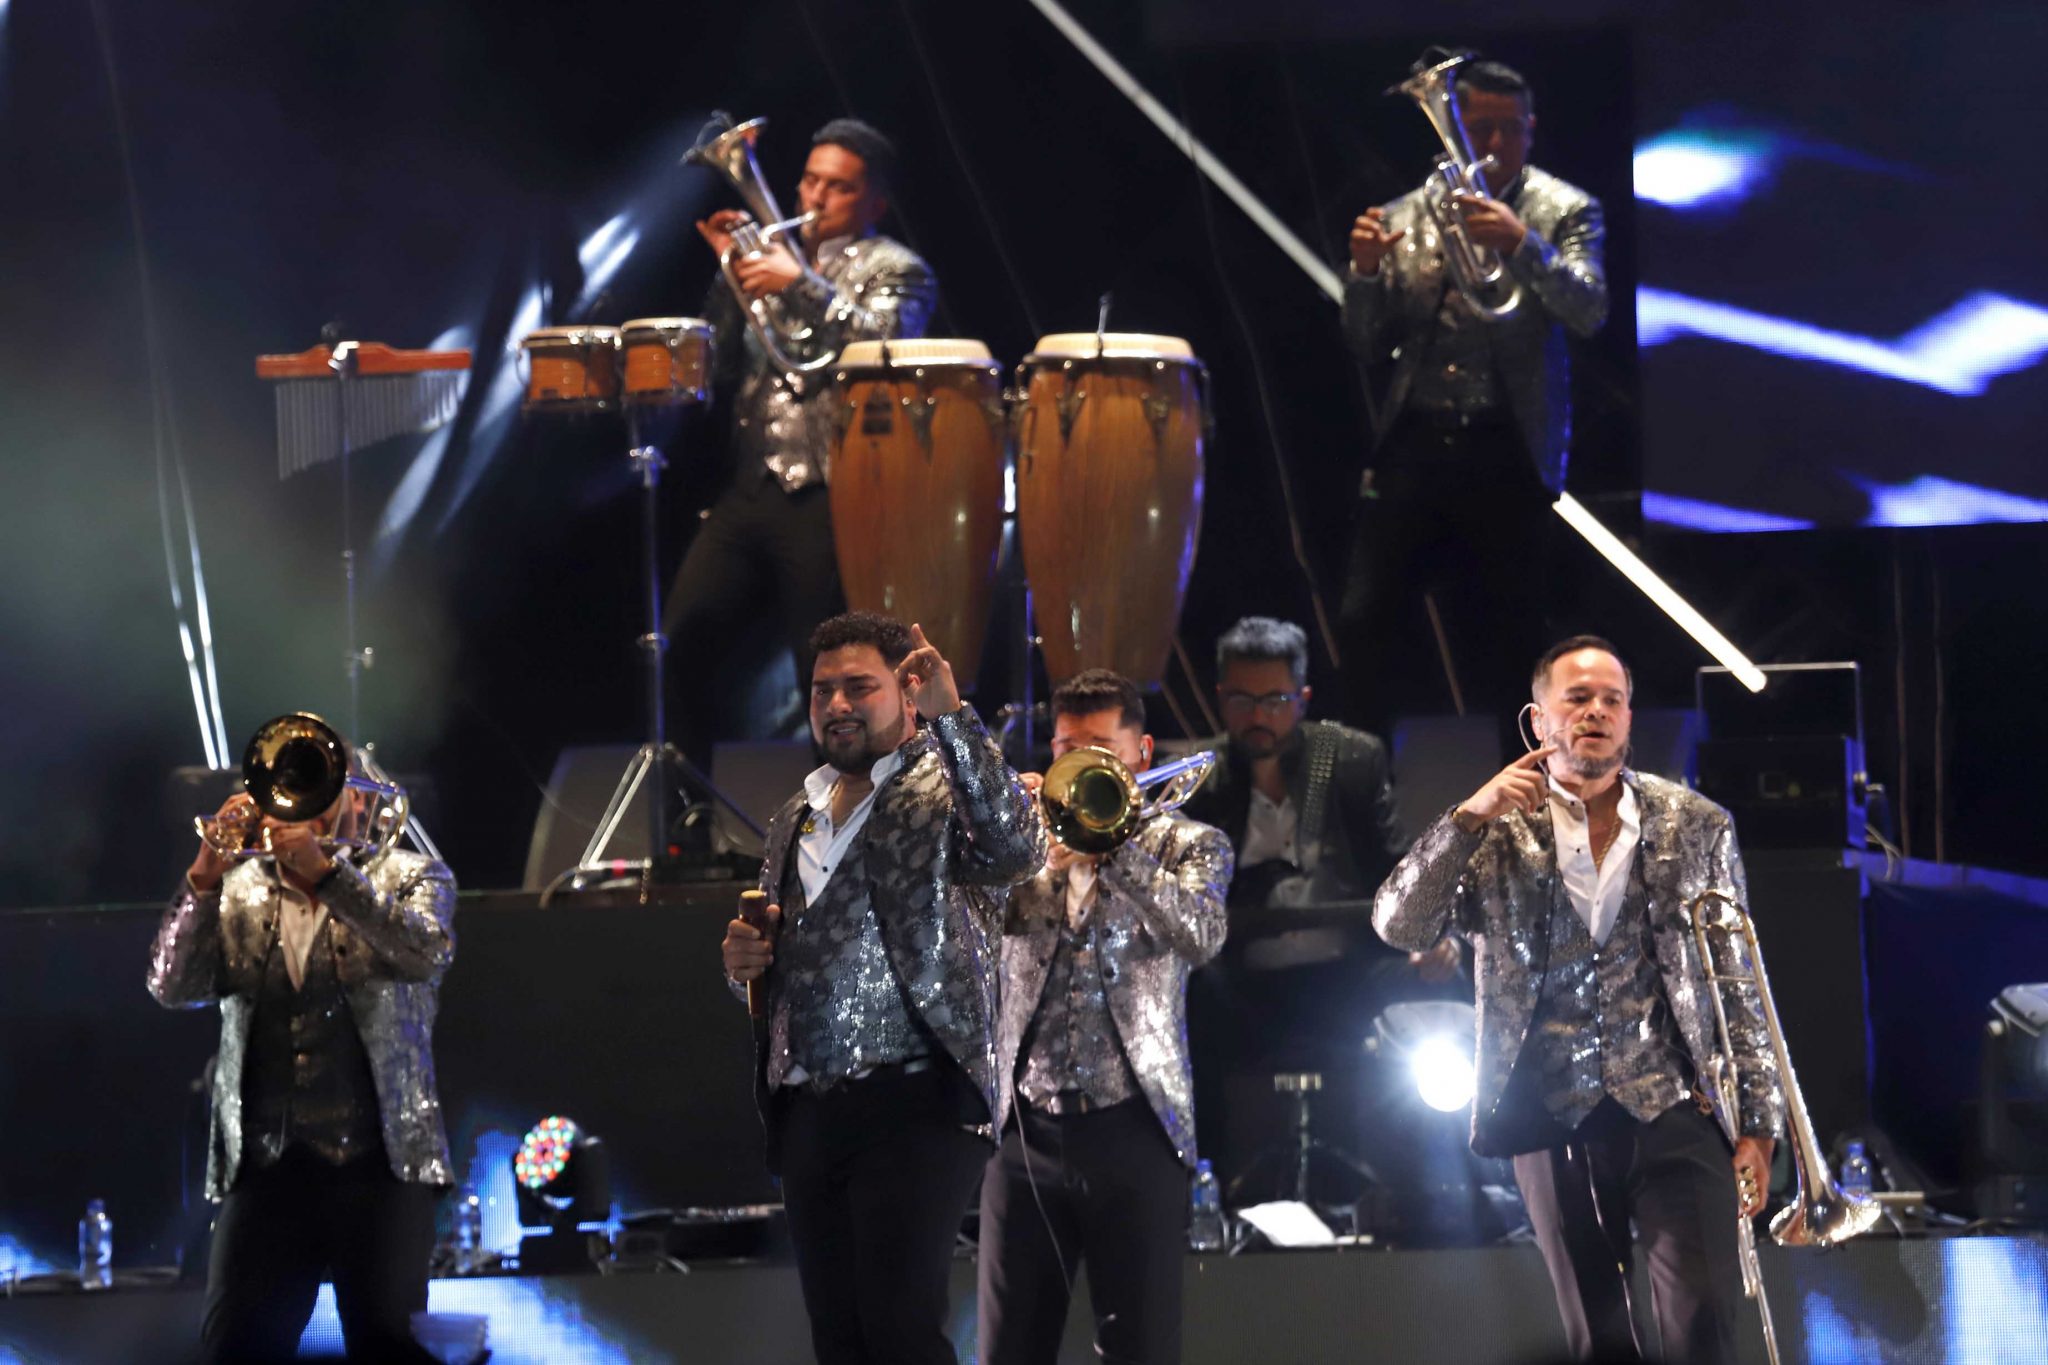 Banda MS vive la internacionalización de su público en la gira “Gracias